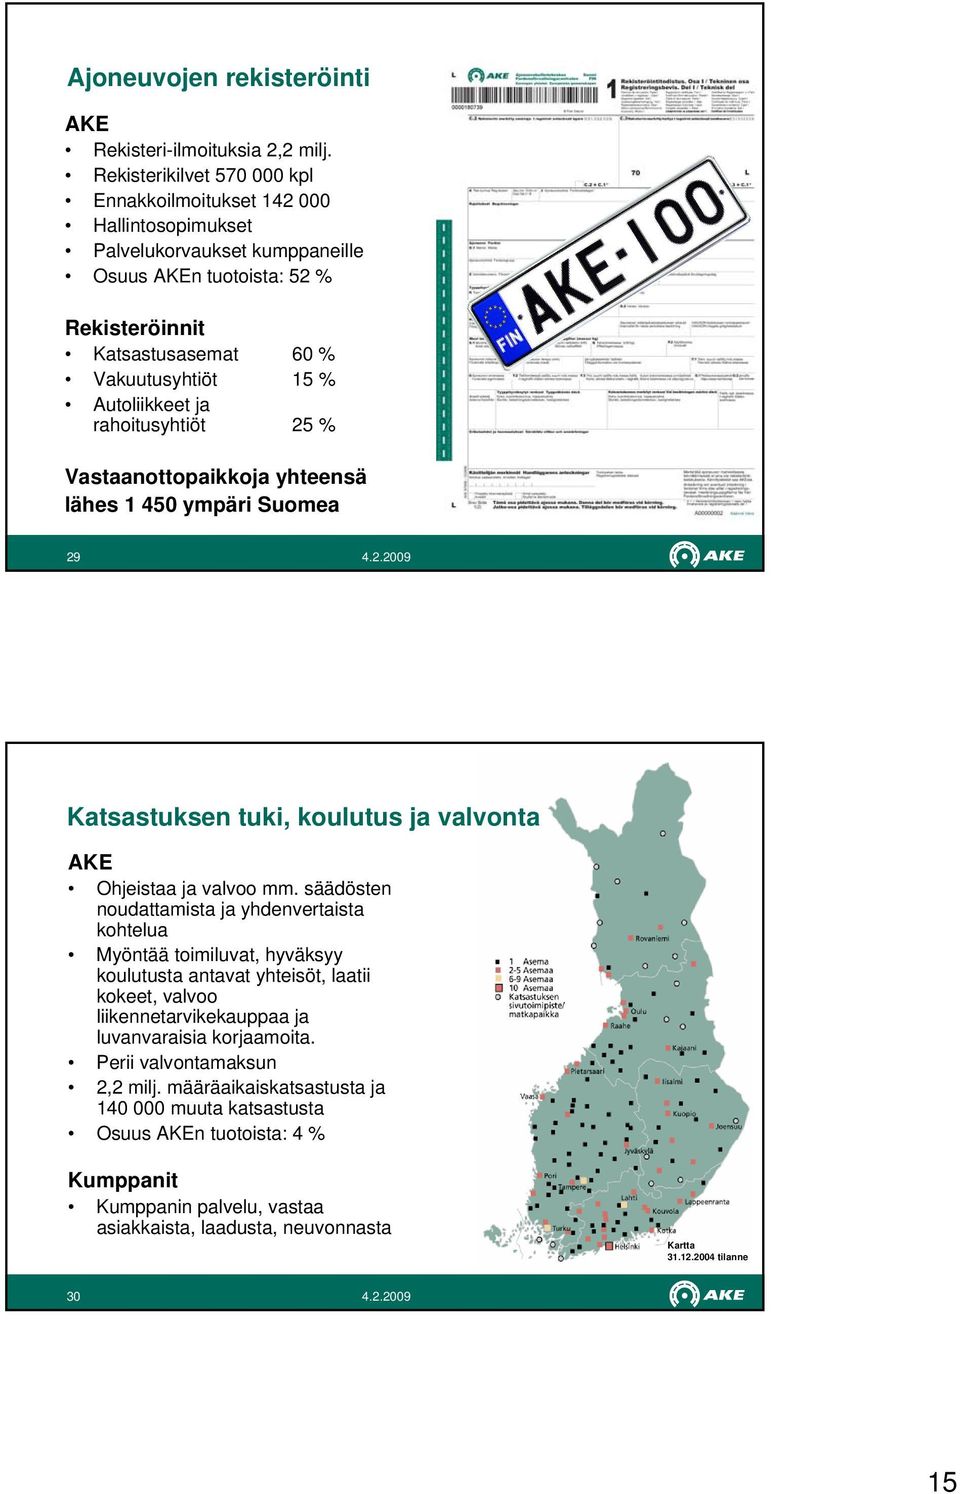 Autoliikkeet ja rahoitusyhtiöt 25 % Vastaanottopaikkoja yhteensä lähes 1 450 ympäri Suomea 29 Katsastuksen tuki, koulutus ja valvonta AKE Ohjeistaa ja valvoo mm.